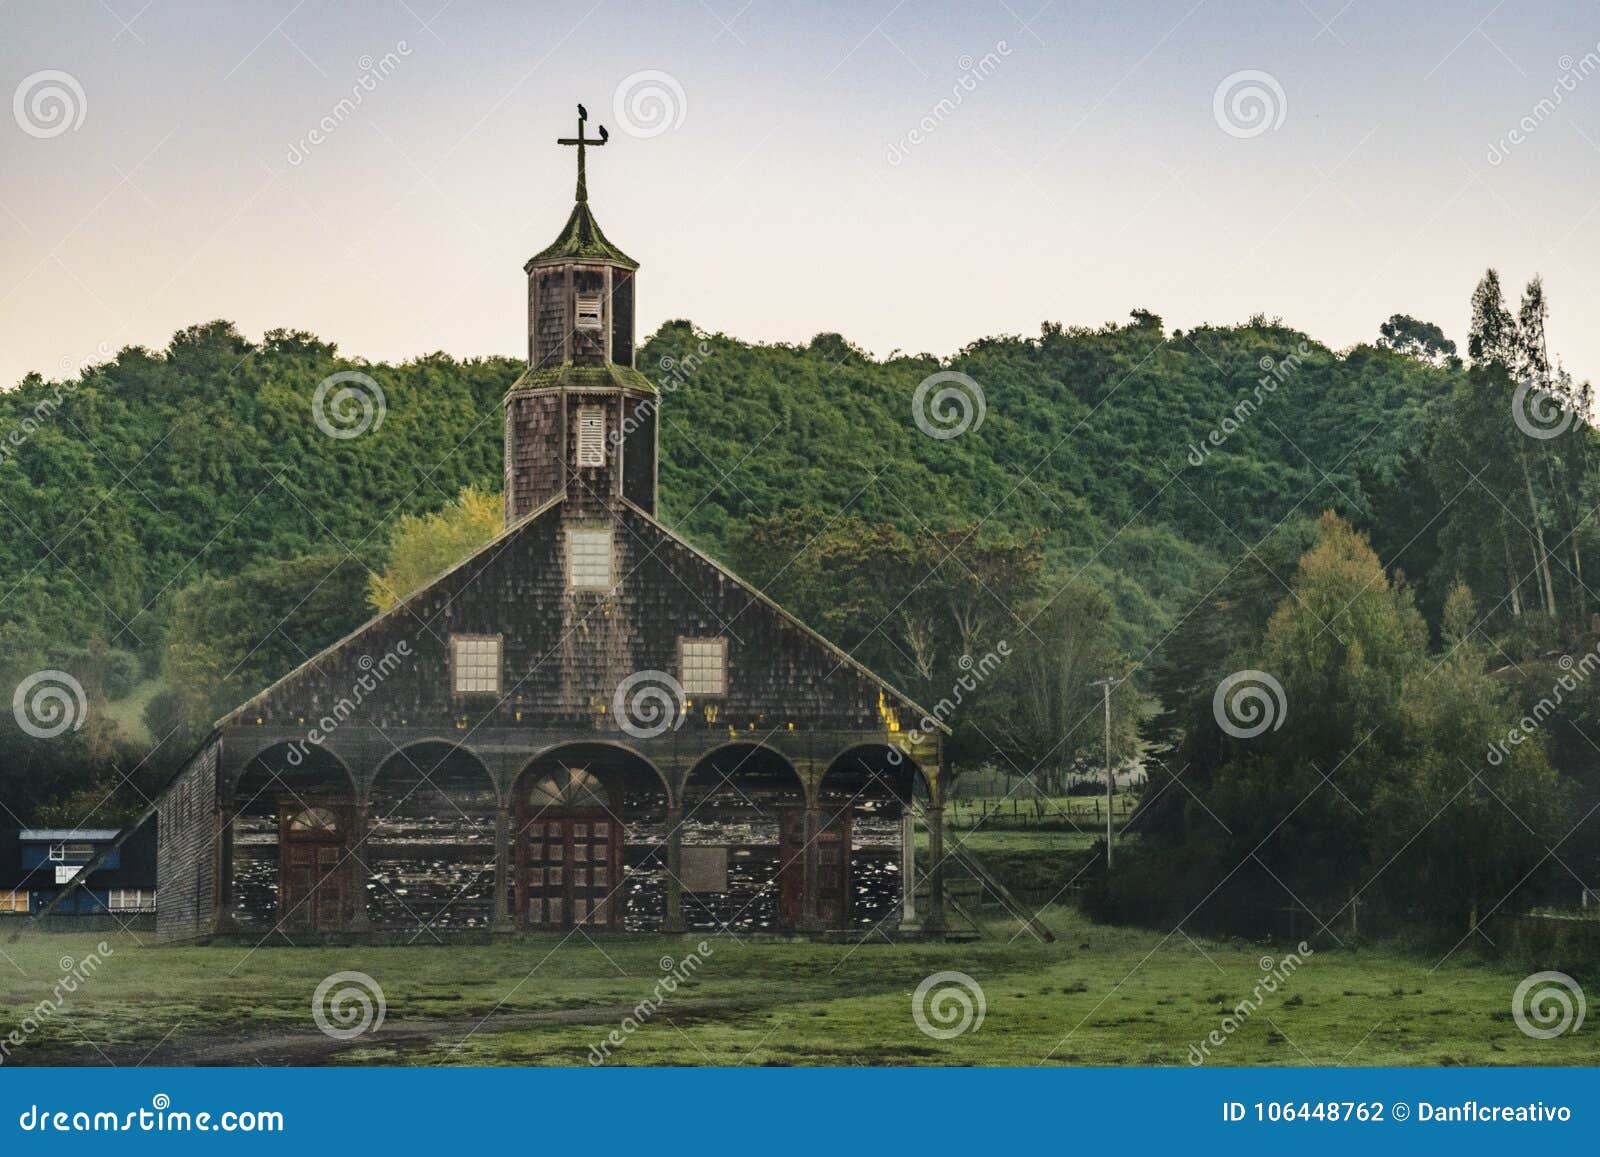 quinchao church, chiloe island, chile